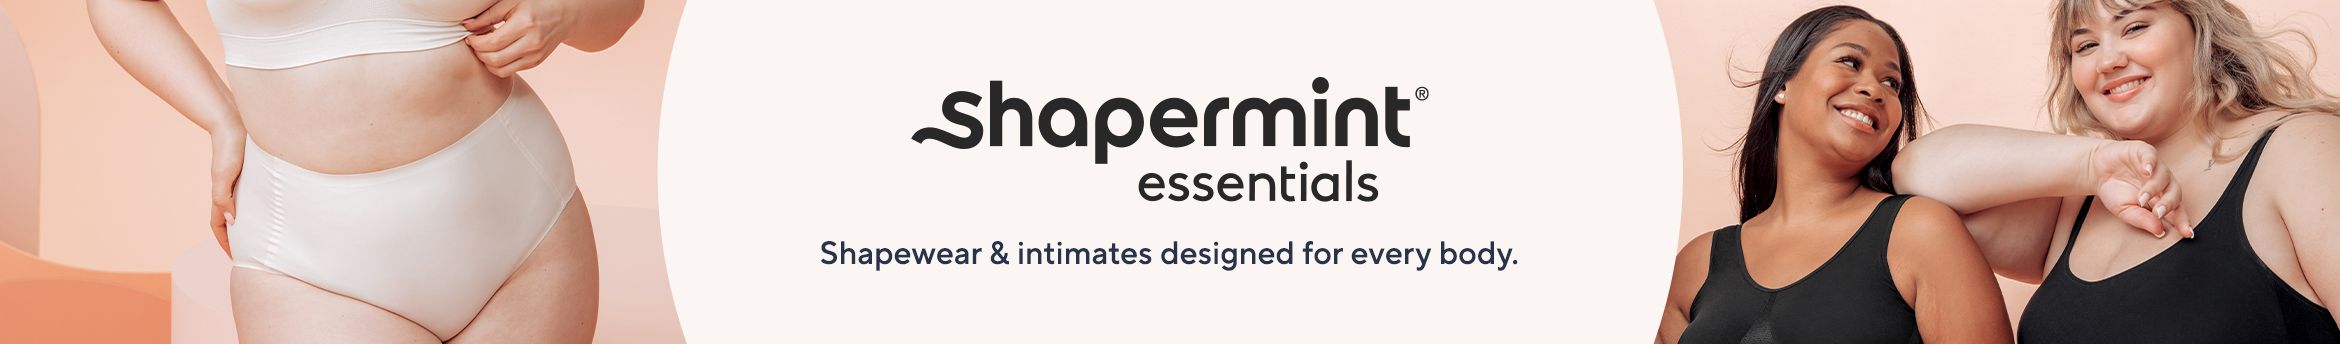 Shapermint Essentials Everyday Empower Mesh Bra - QVC.com